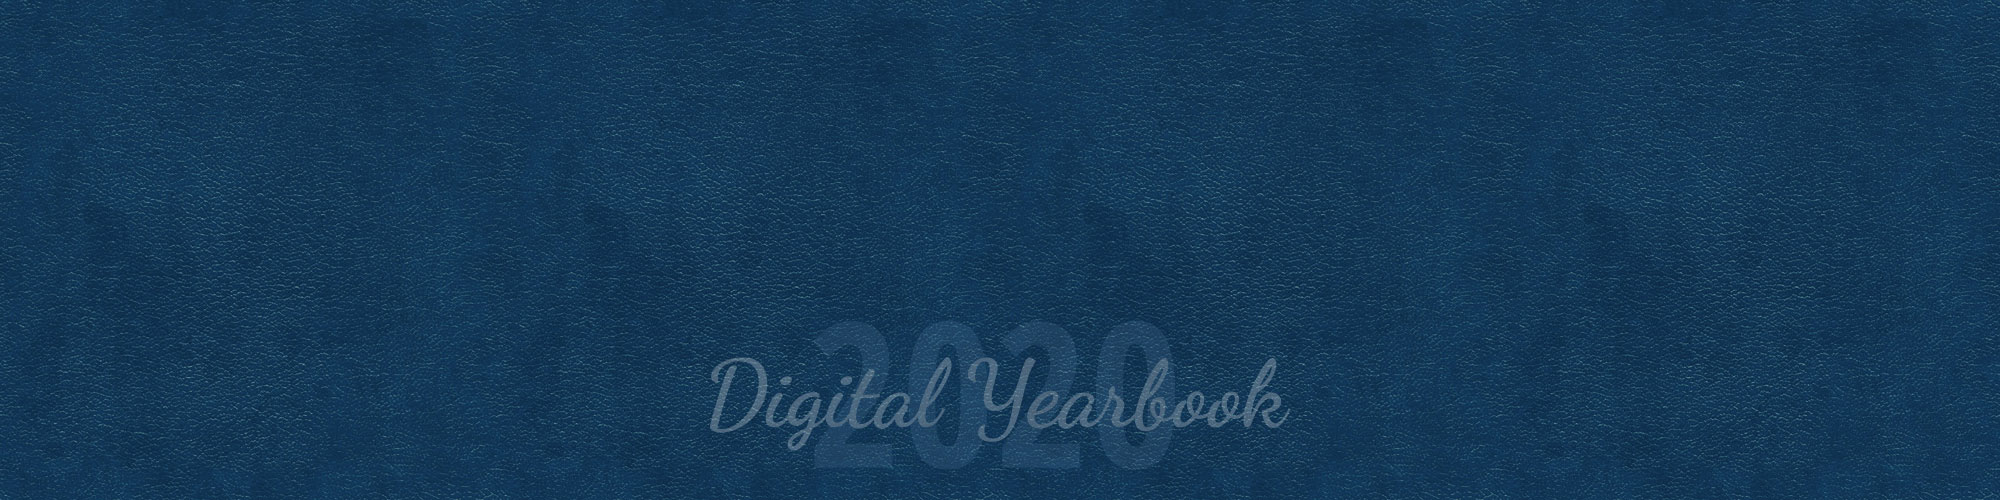 2020 Digital Yearbook